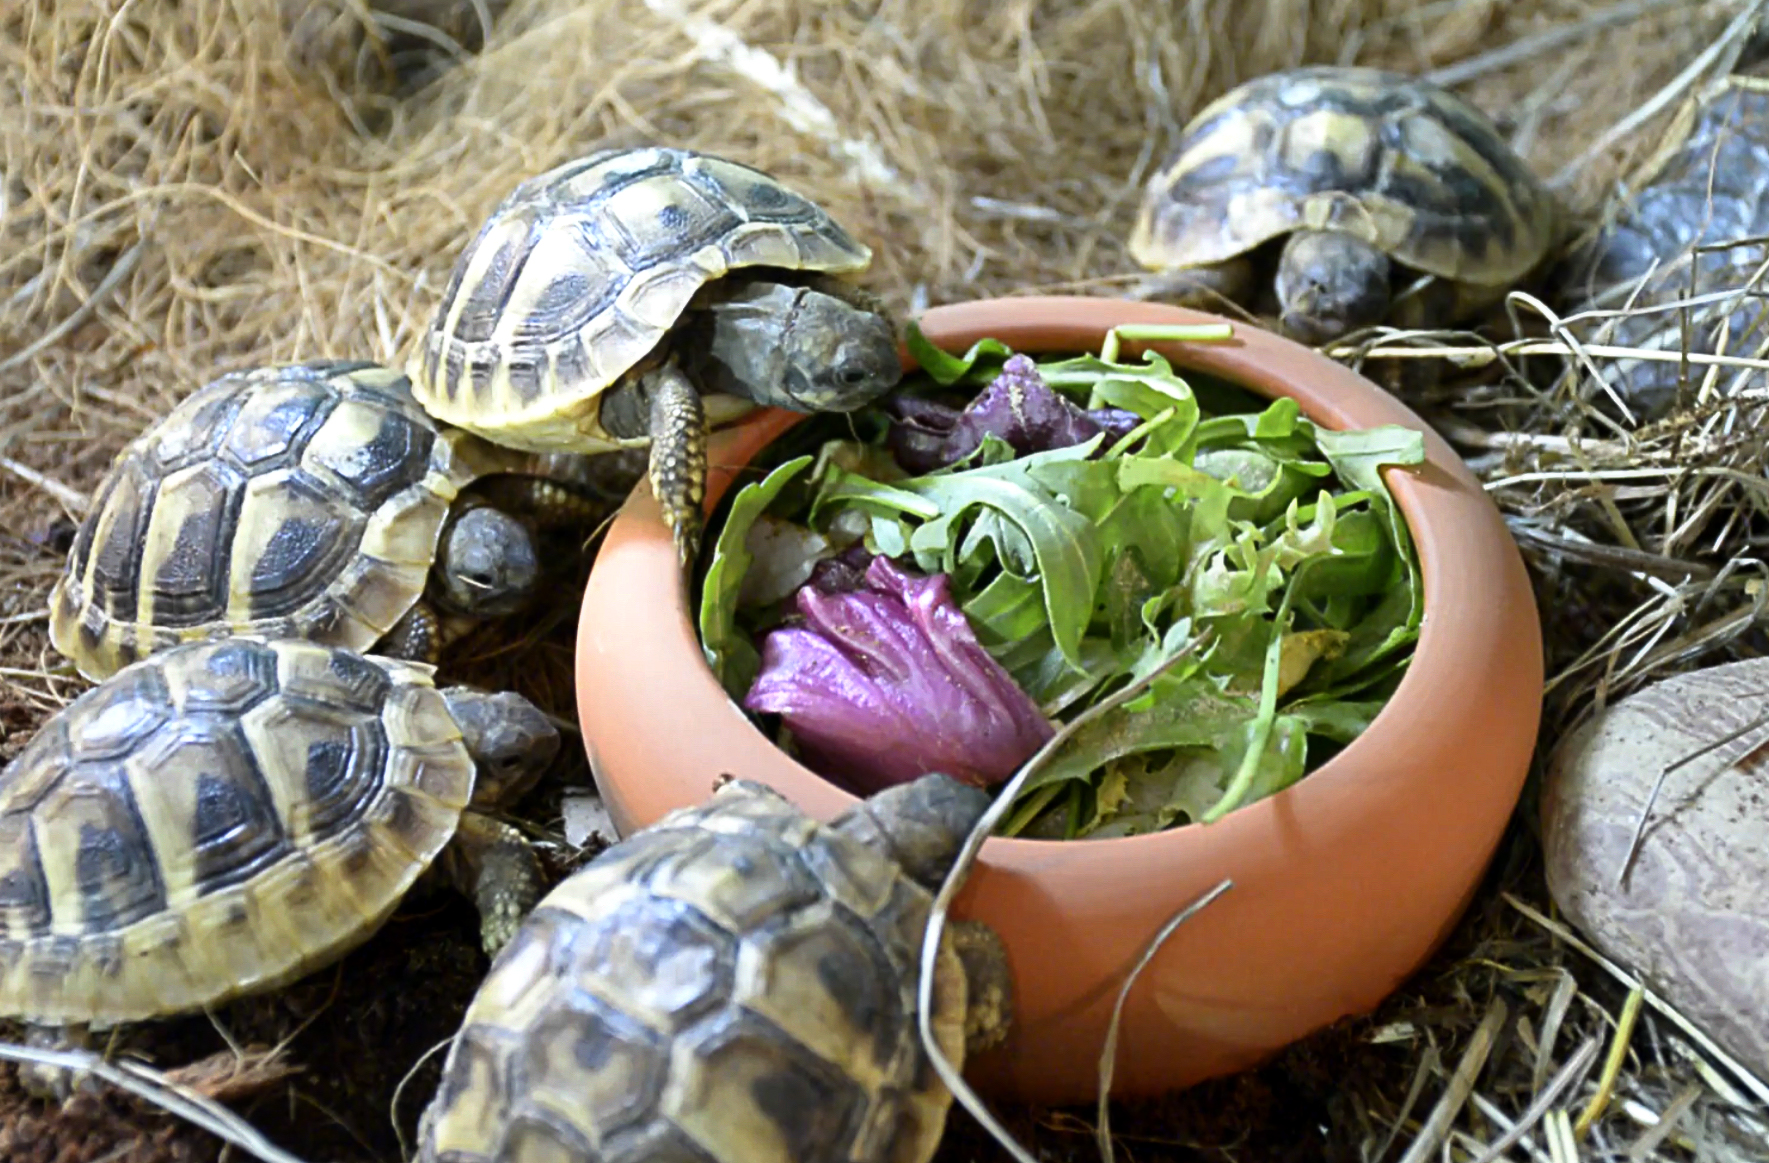 Turtles eating suplemented food